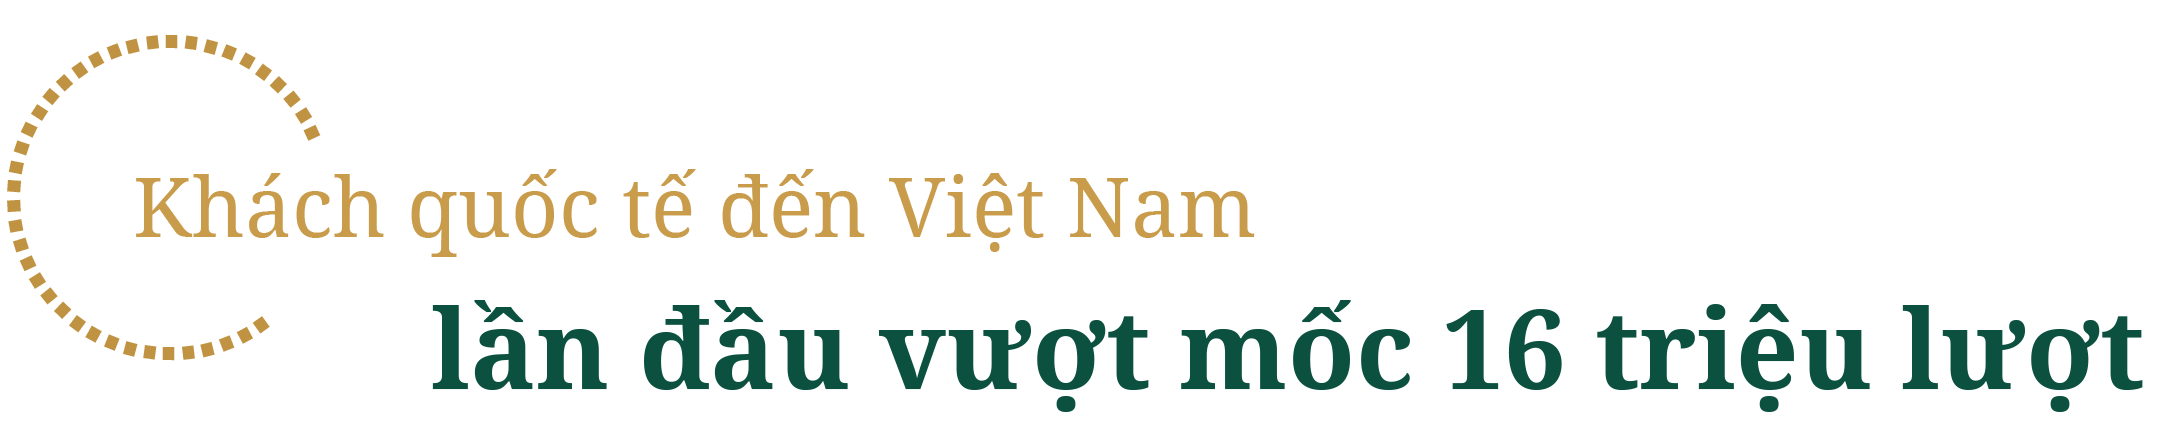 Du lịch Việt Nam đón lượng khách kỷ lục, nhận cơn mưa giải thưởng trong năm 2019 - 1